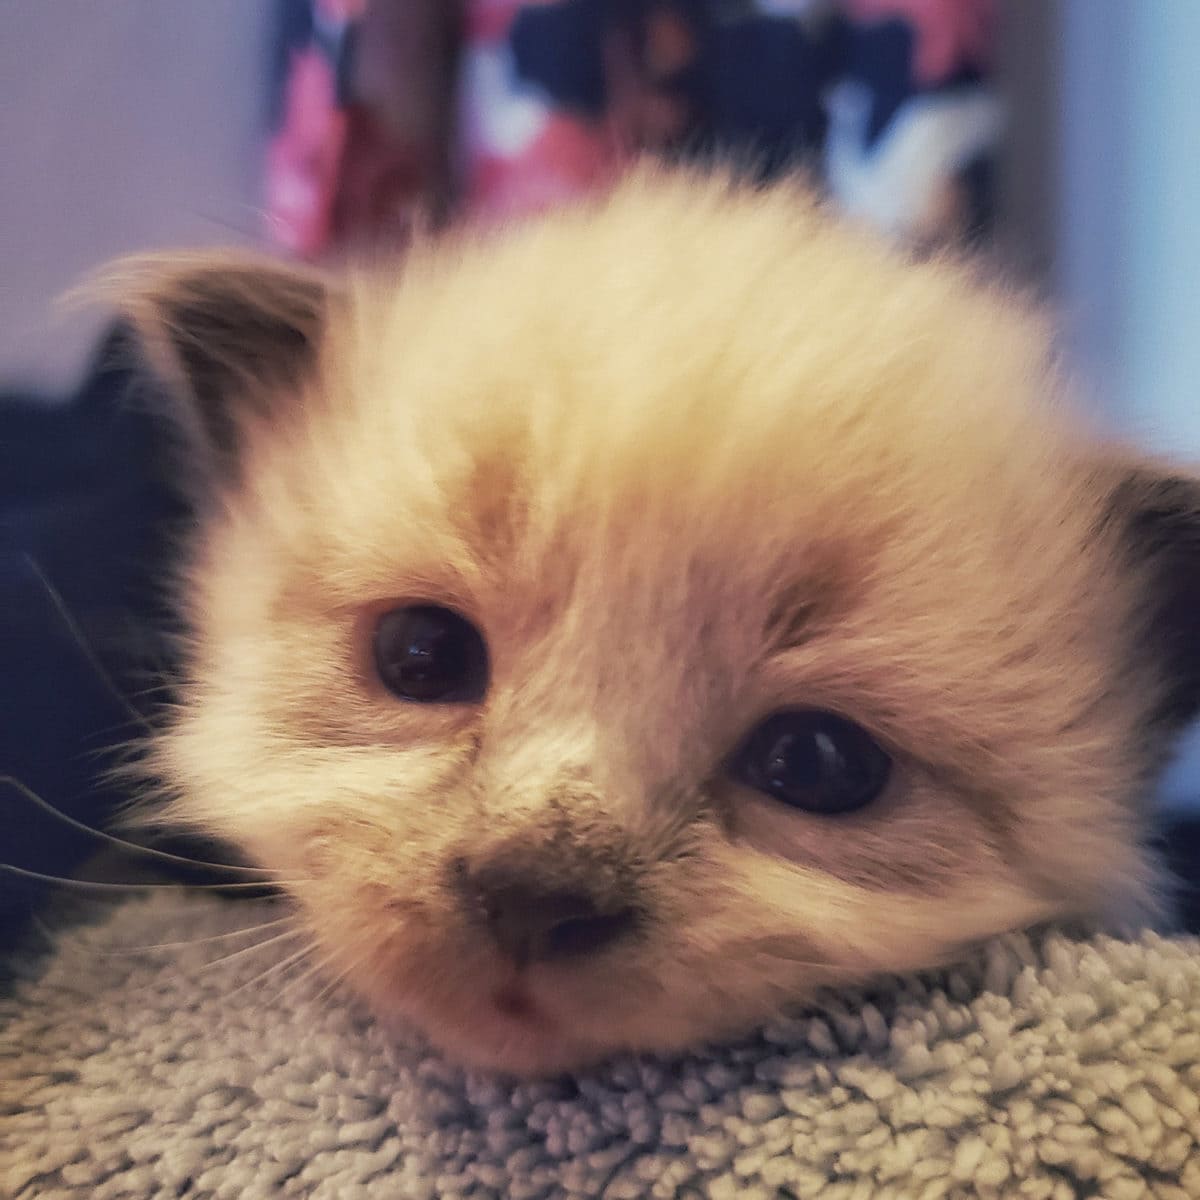 foster kitten 3 weeks